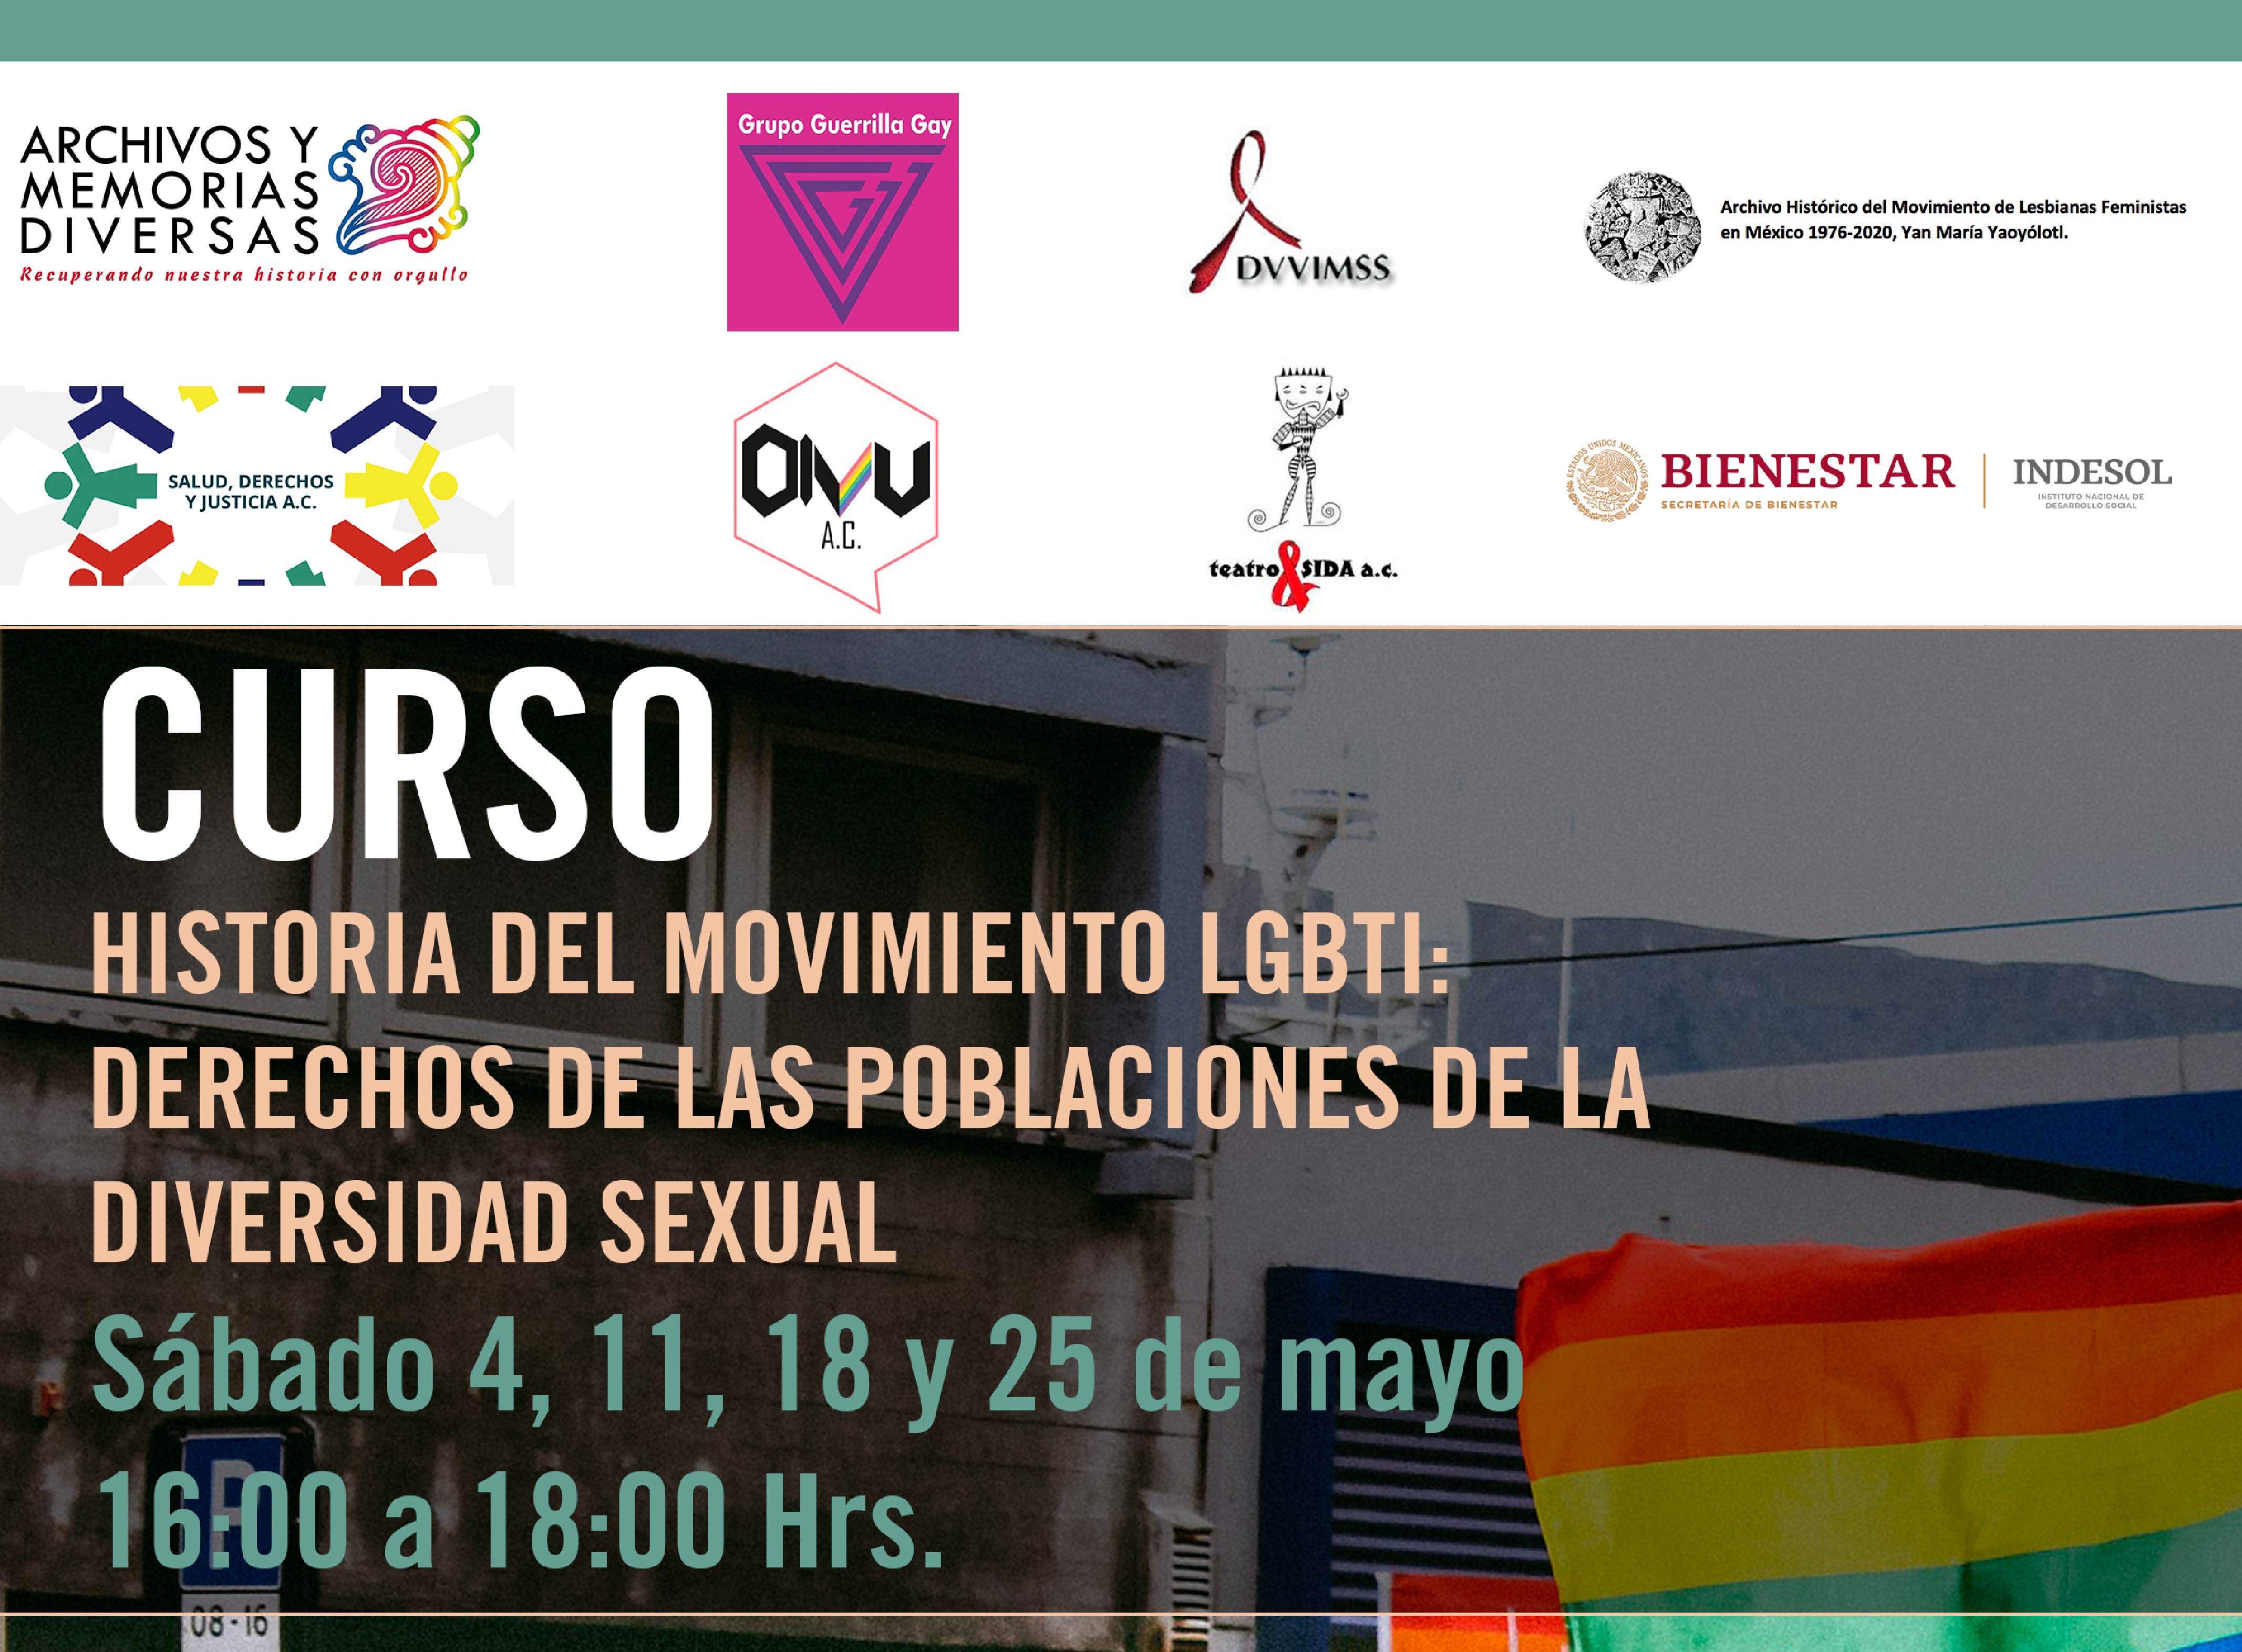 Invitación al curso "Historia del Movimiento LGBTI: Derechos de las Poblaciones de la Diversidad Sexual"